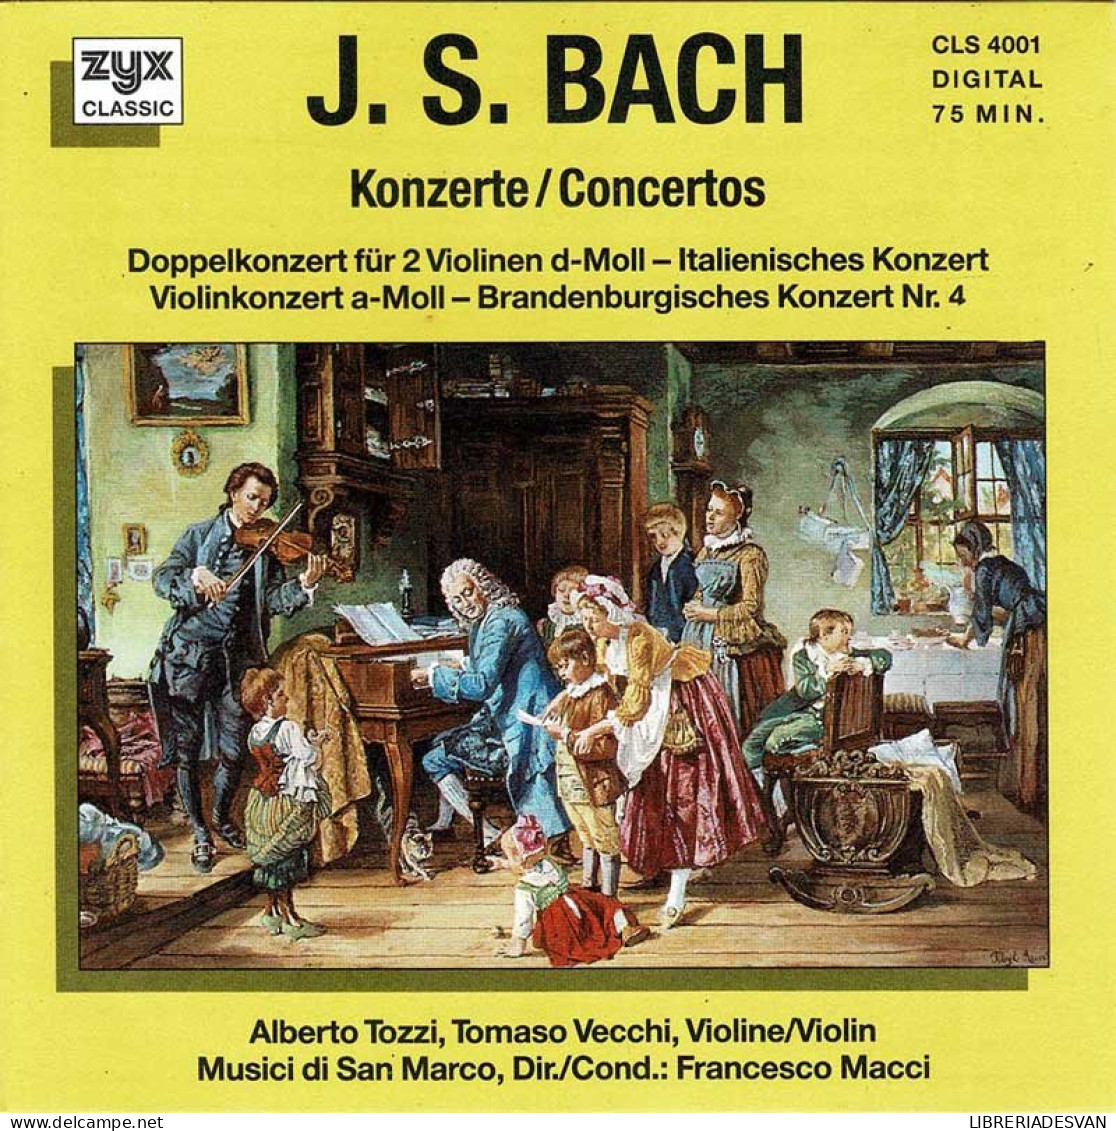 J. S. Bach - Concertos. CD - Classical